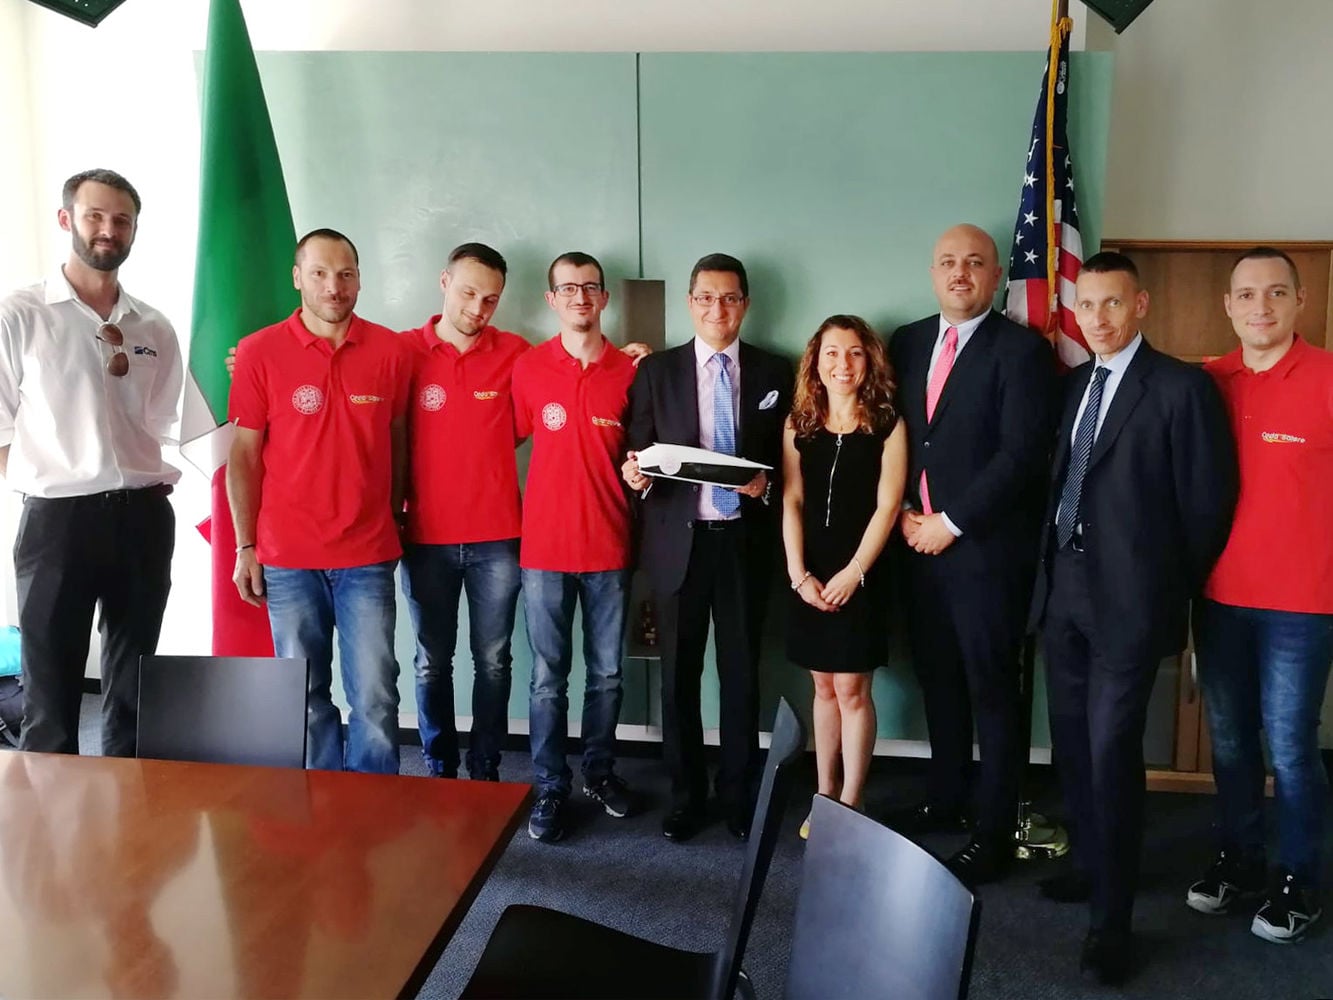 Scm Group y Cms visitan el consulado italiano de Chicago con el equipo Onda Solare